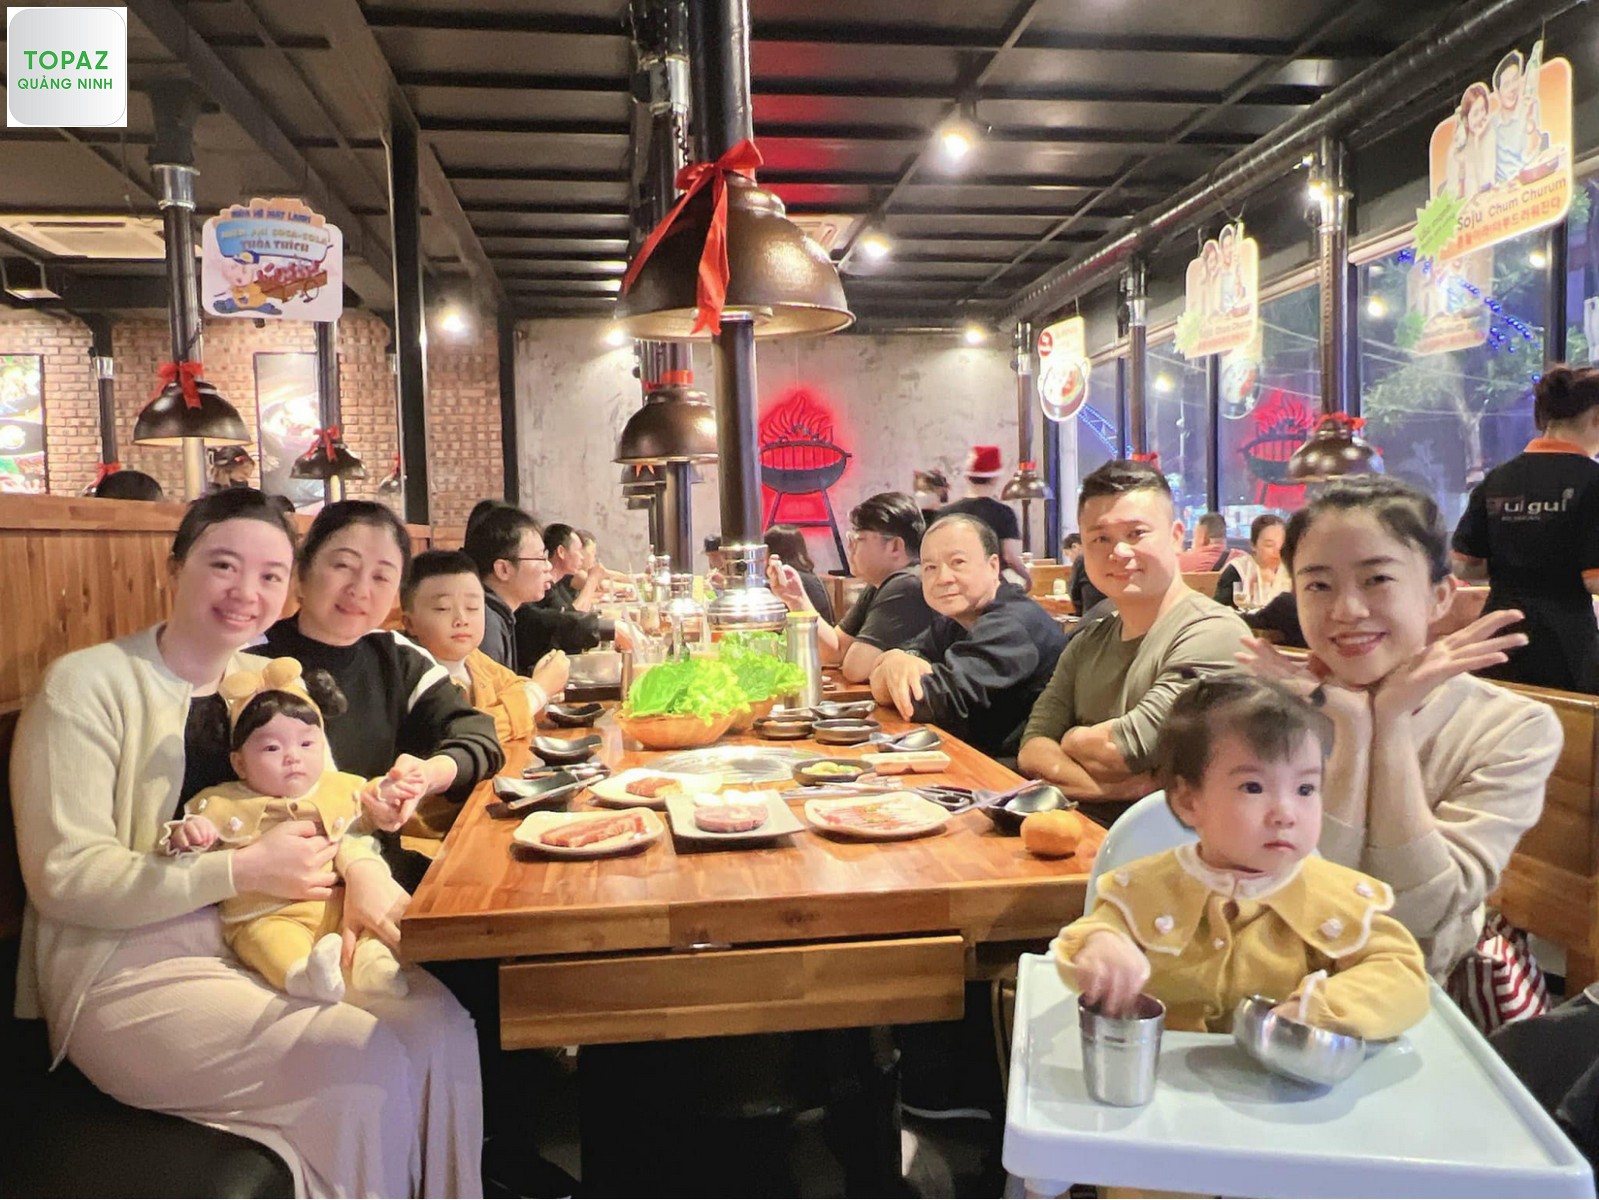 Guigui BBQ Quảng Ninh rất phù hợp cho những buổi tụ tập gia đình và bạn bè